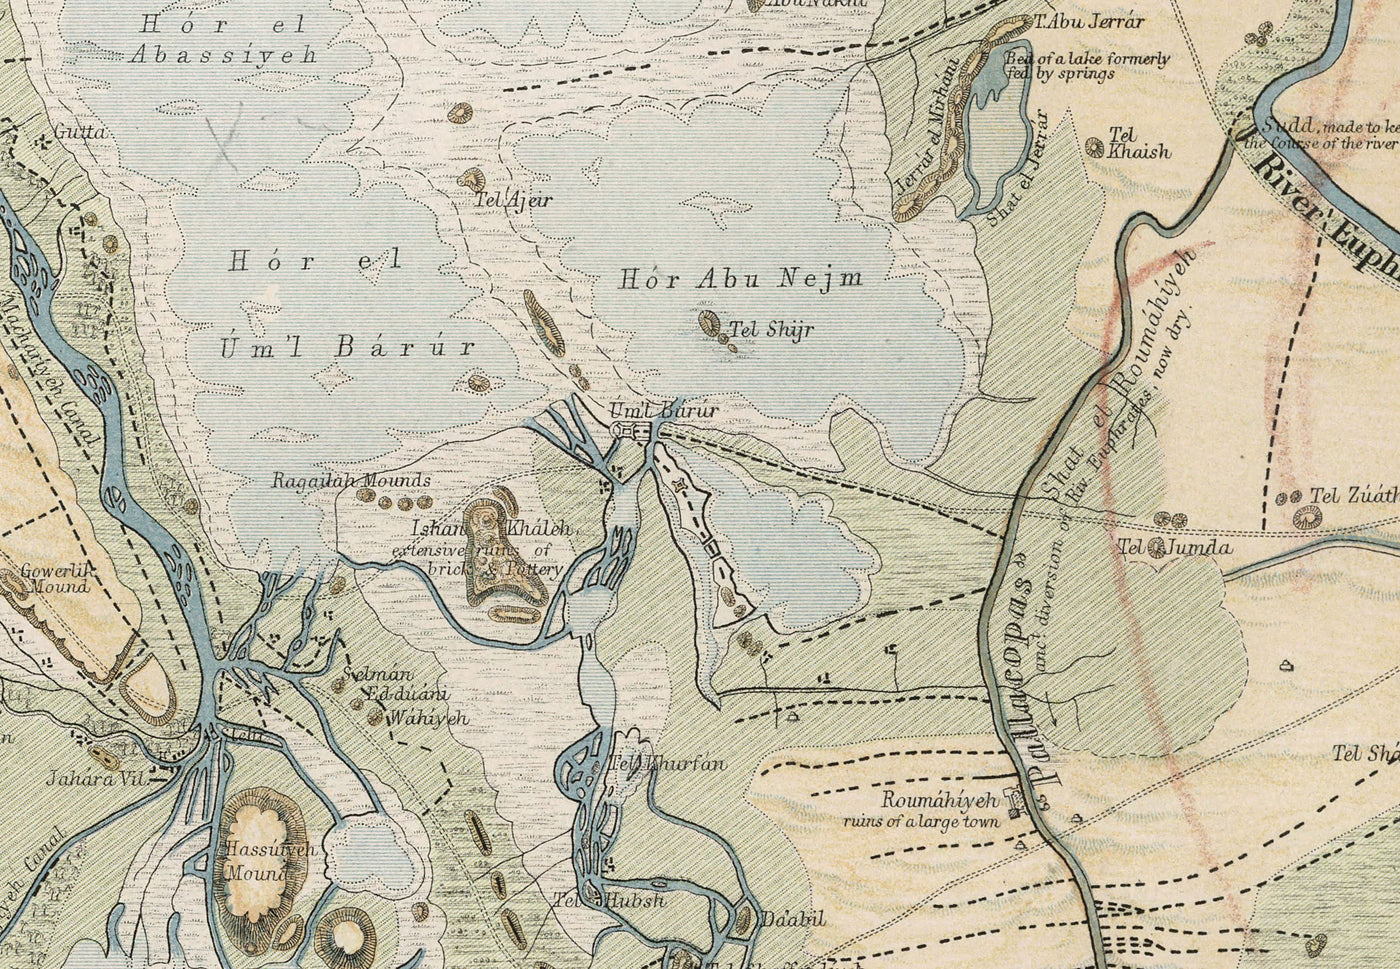 Antiguo mapa de la antigua ciudad de Babilonia en 1874 por William Smith - Iraq, Imperio Babilónico, Río Éufrates, Hillah